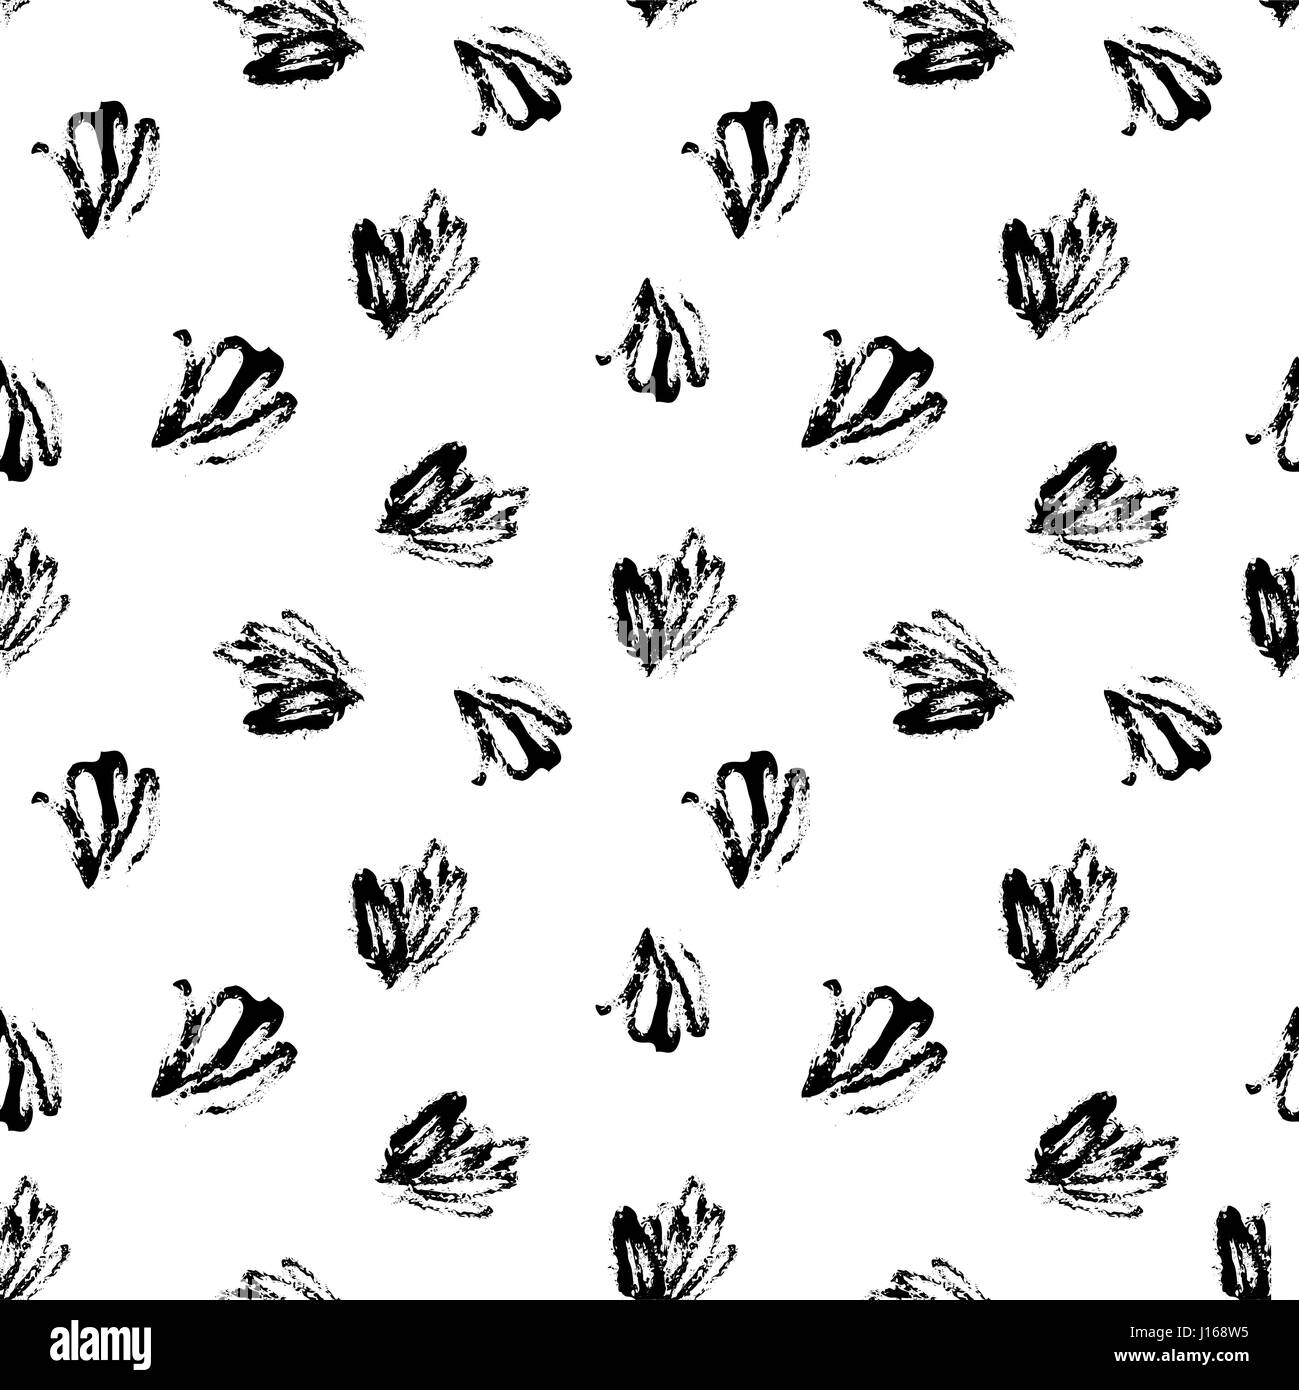 Nahtlose Muster mit schwarzen Pinselstrichen auf weißem Hintergrund. Abstrakter Stil Textil, Geschenkpapier, Wand-Kunst-Design. Stock Vektor